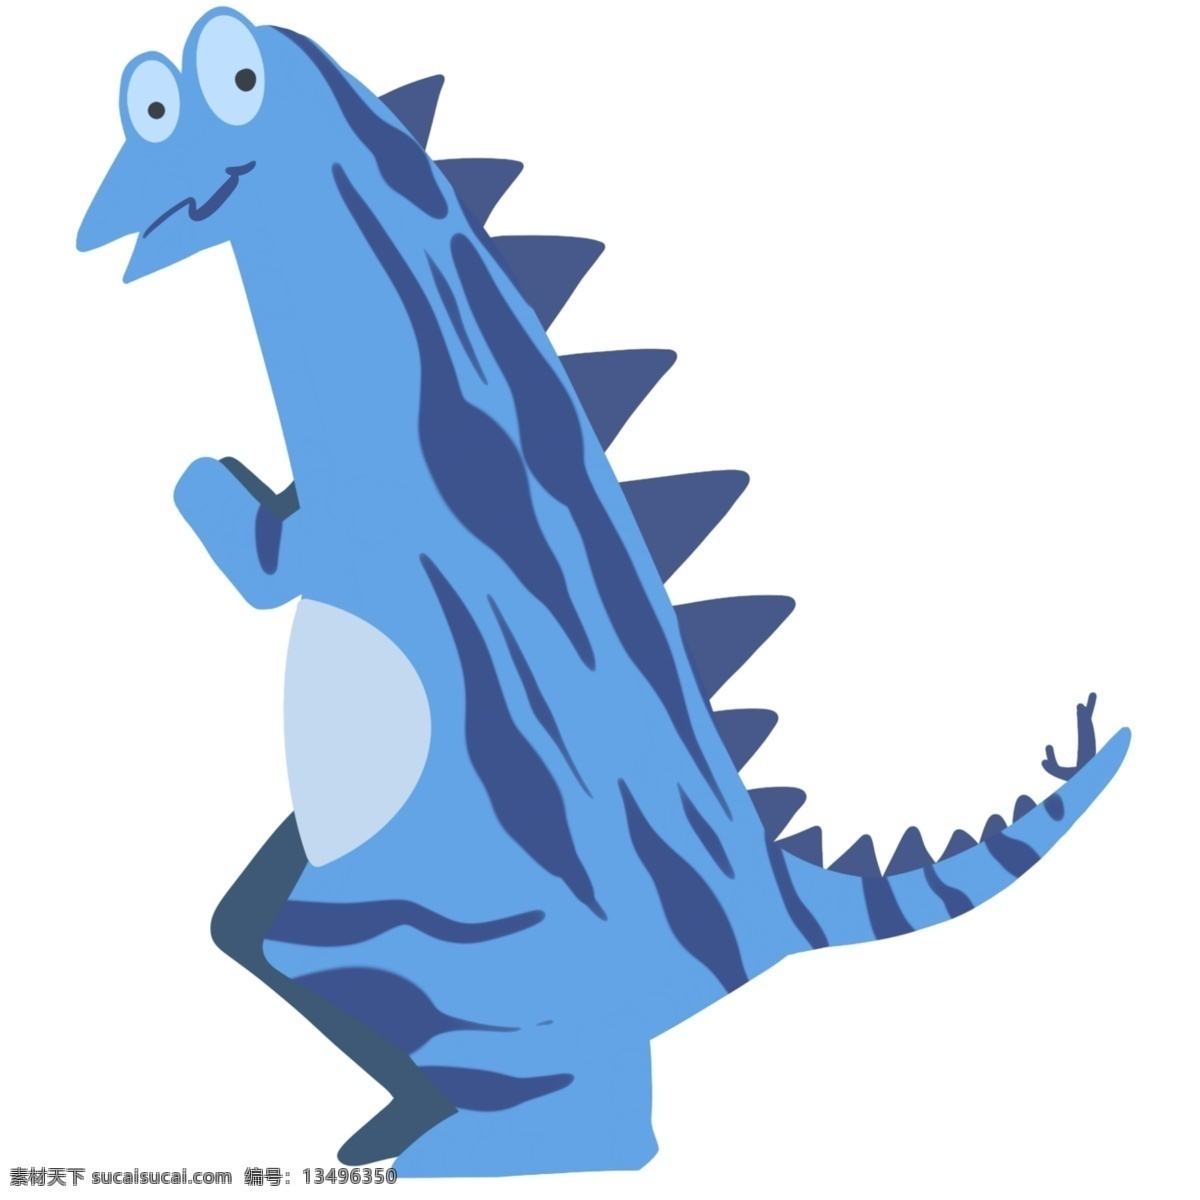 蓝色 创意 钉 龙 插画 蓝色的钉龙 恐龙 尖嘴恐龙 钉龙 西方传说 动物 可爱 斑点钉龙 纹理